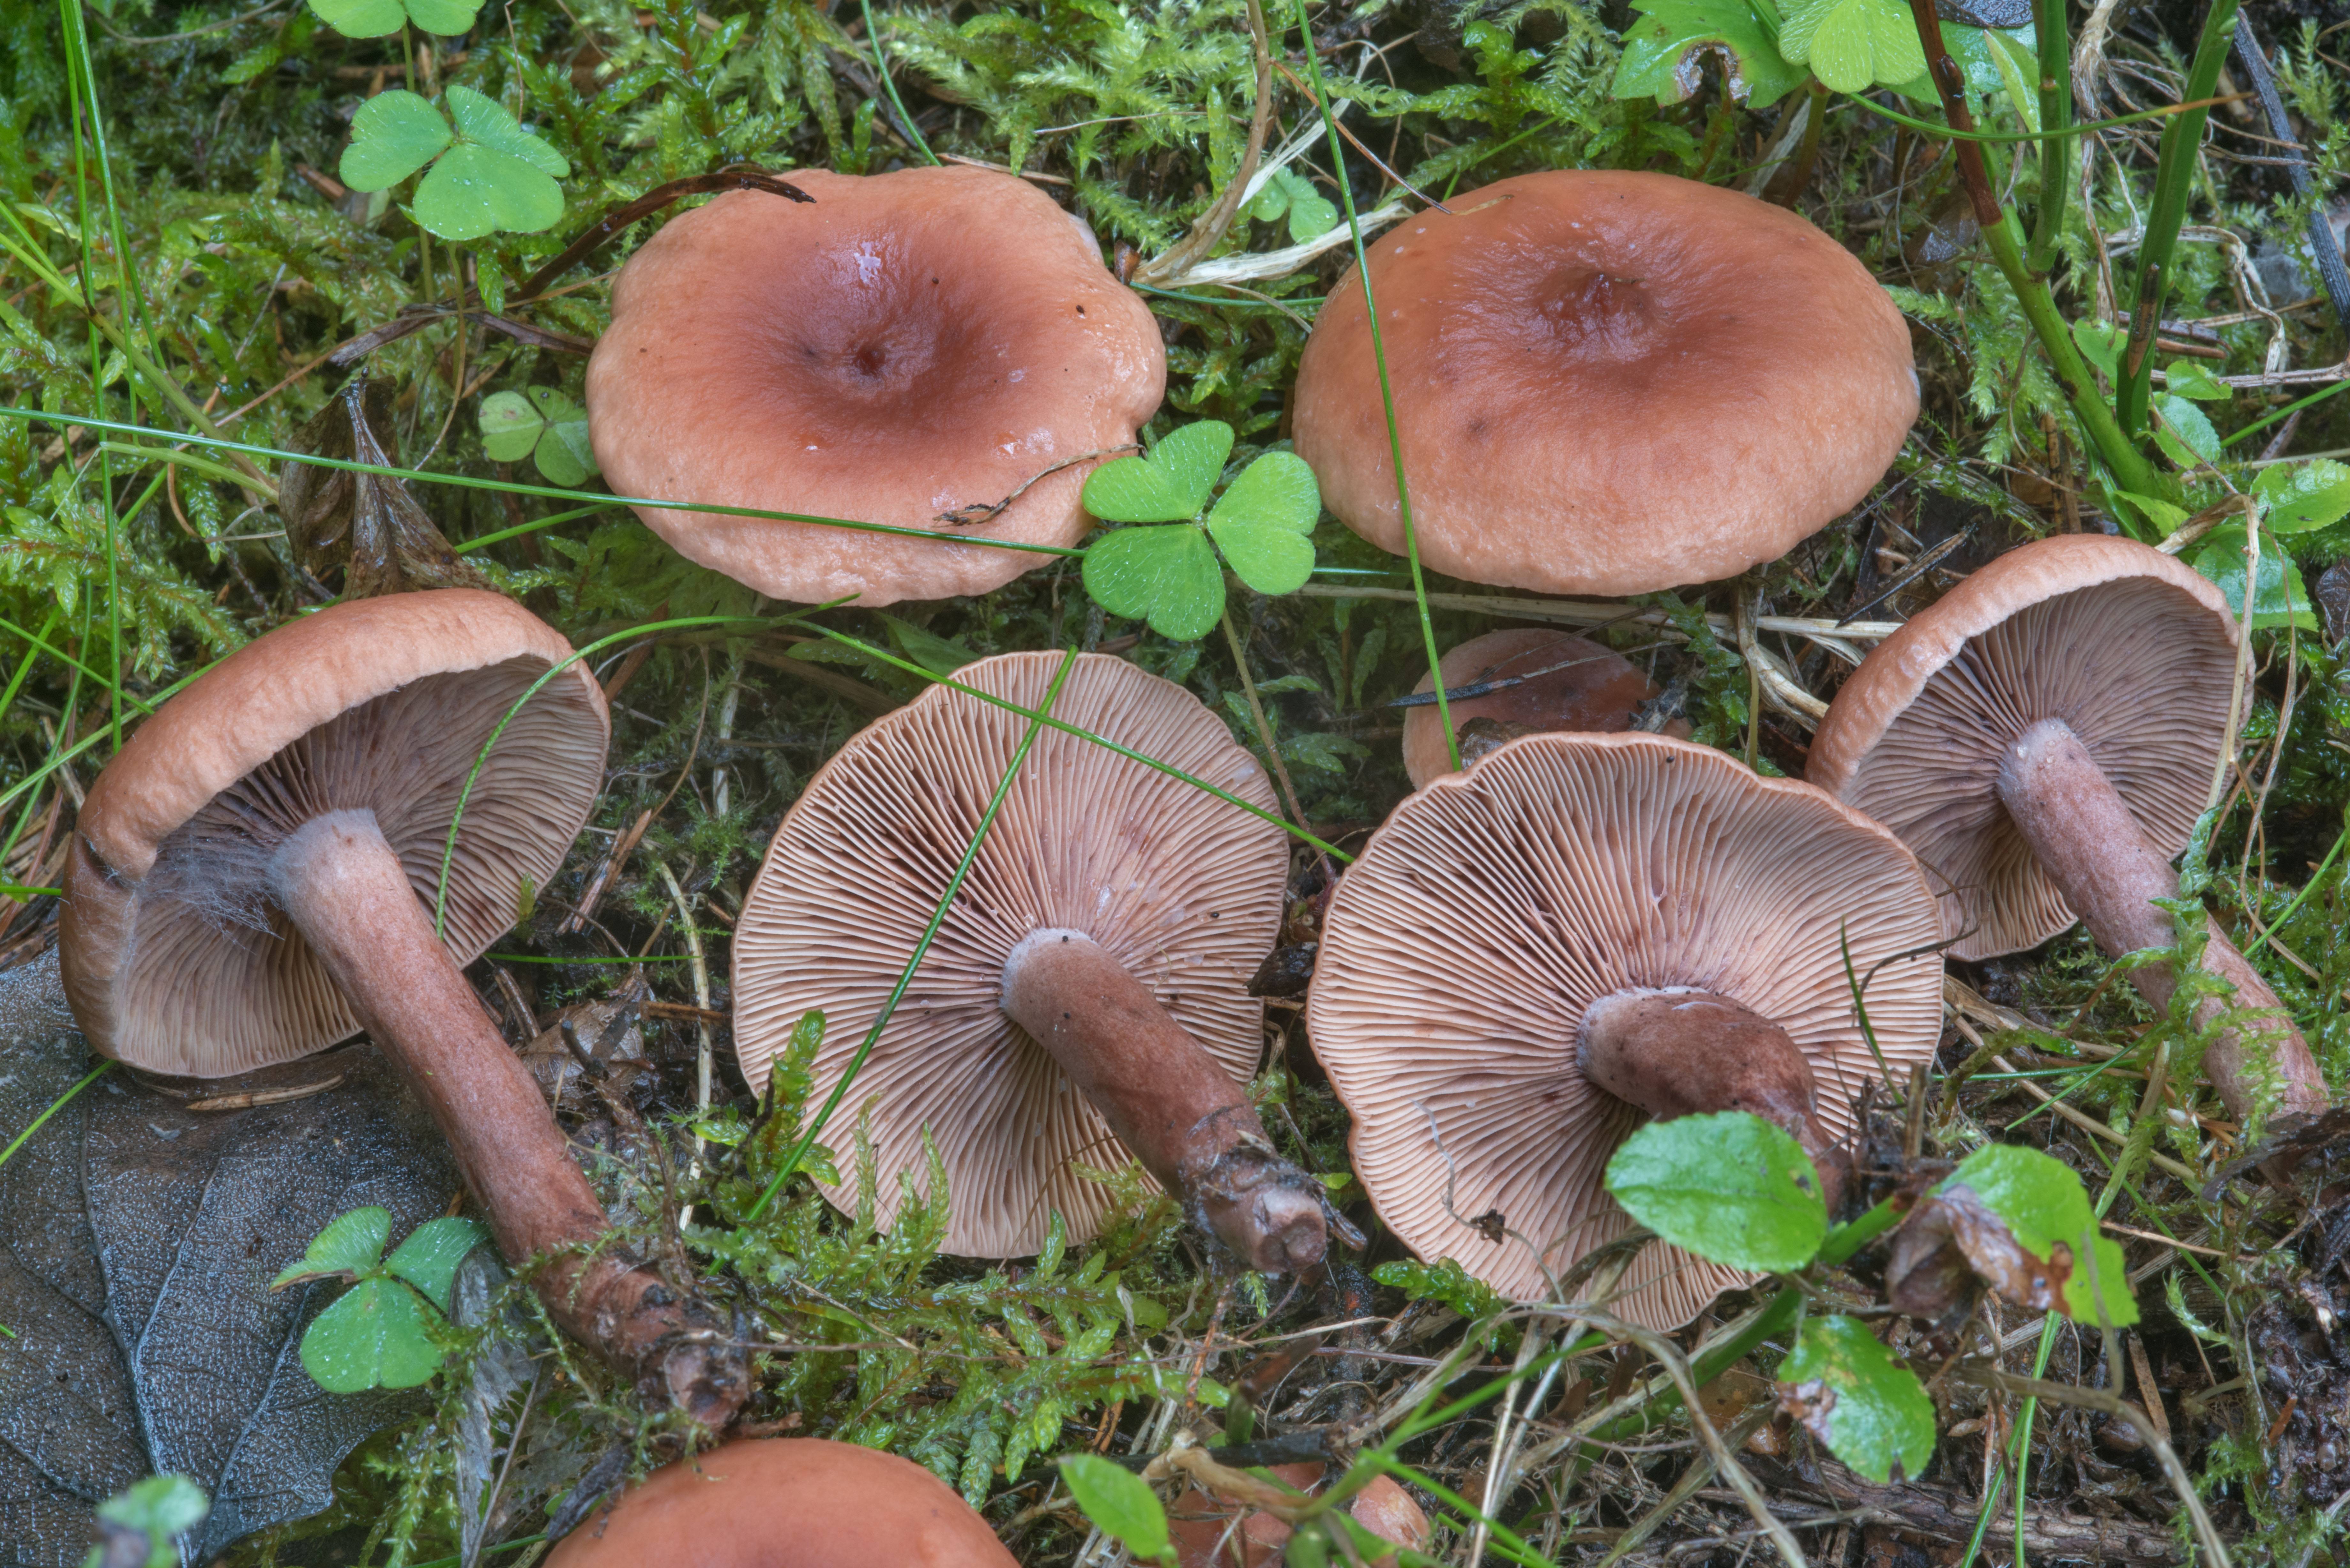 Жёлчный гриб или ложный белый гриб горчак: фото, описание, как его готовить и как отличить от двойников